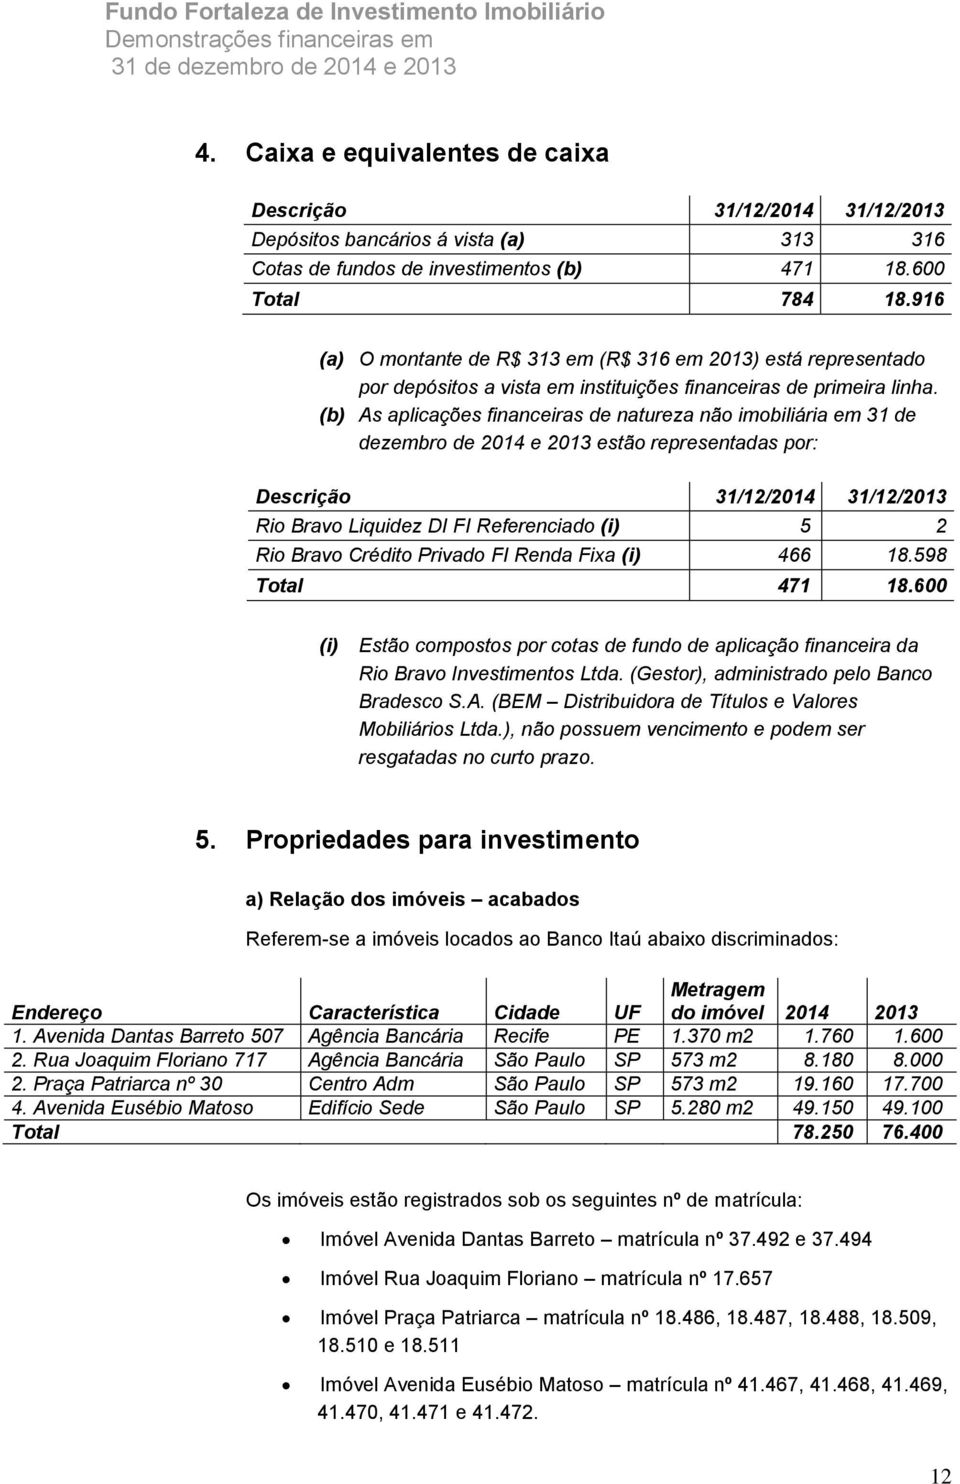 (b) As aplicações financeiras de natureza não imobiliária em 31 de dezembro de 2014 e 2013 estão representadas por: Descrição 31/12/2014 31/12/2013 Rio Bravo Liquidez DI FI Referenciado (i) 5 2 Rio